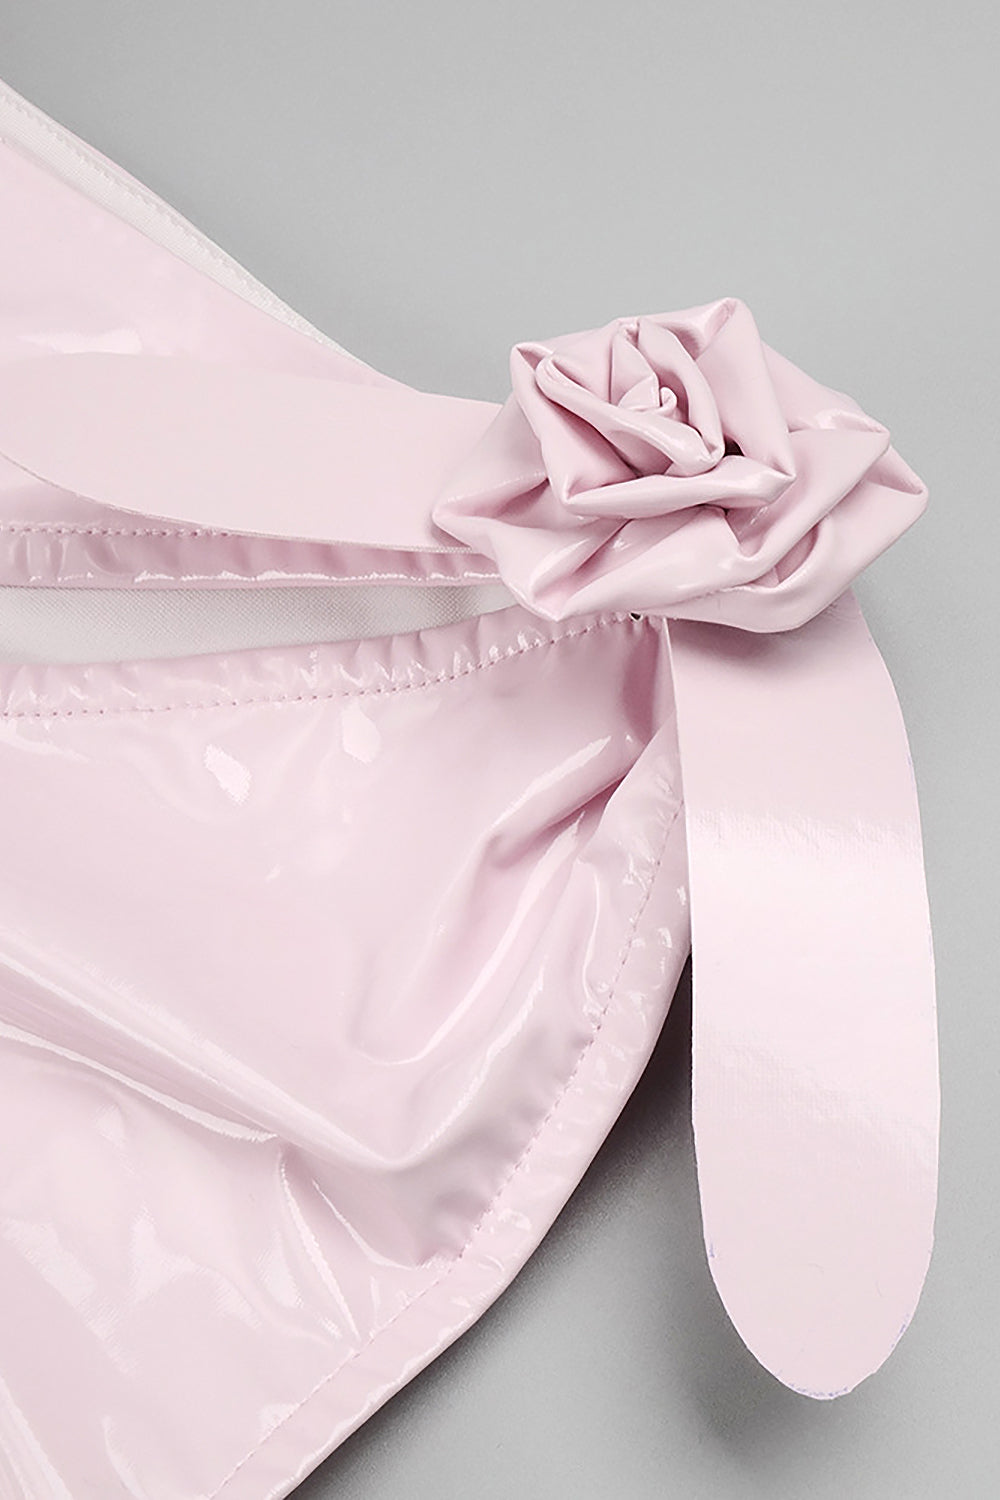 Glam con vestido ceñido de látex vanguardista en blanco y rosa